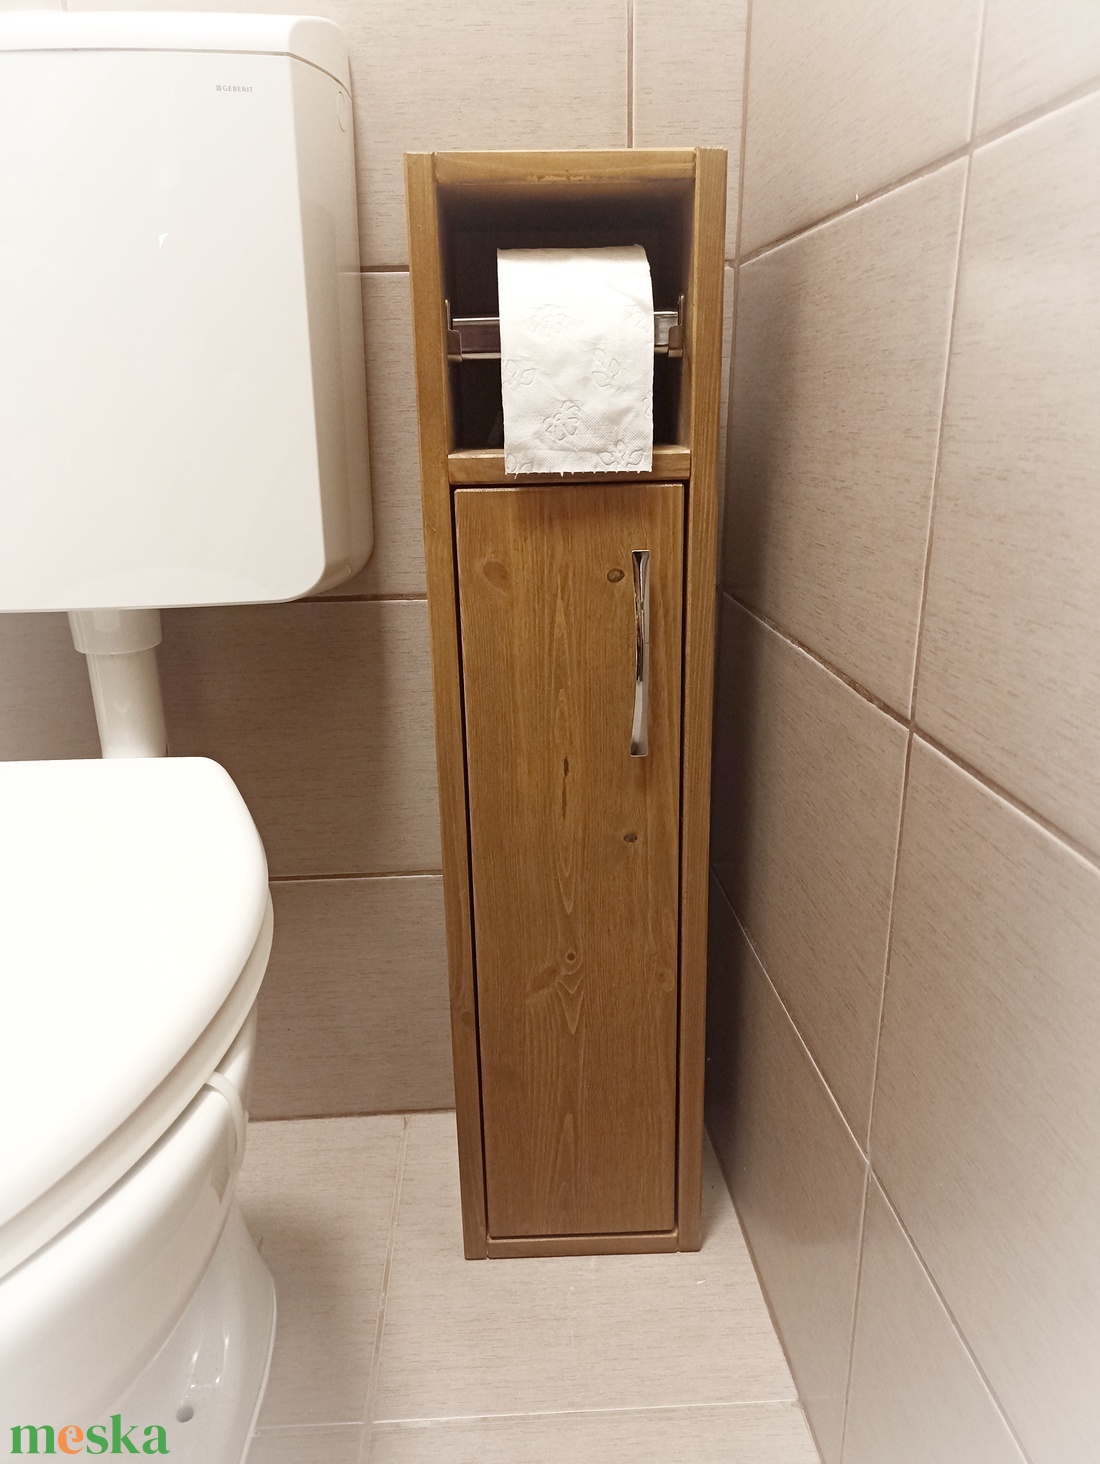 WC papír tartó  - otthon & lakás - bútor - szekrény - Meska.hu